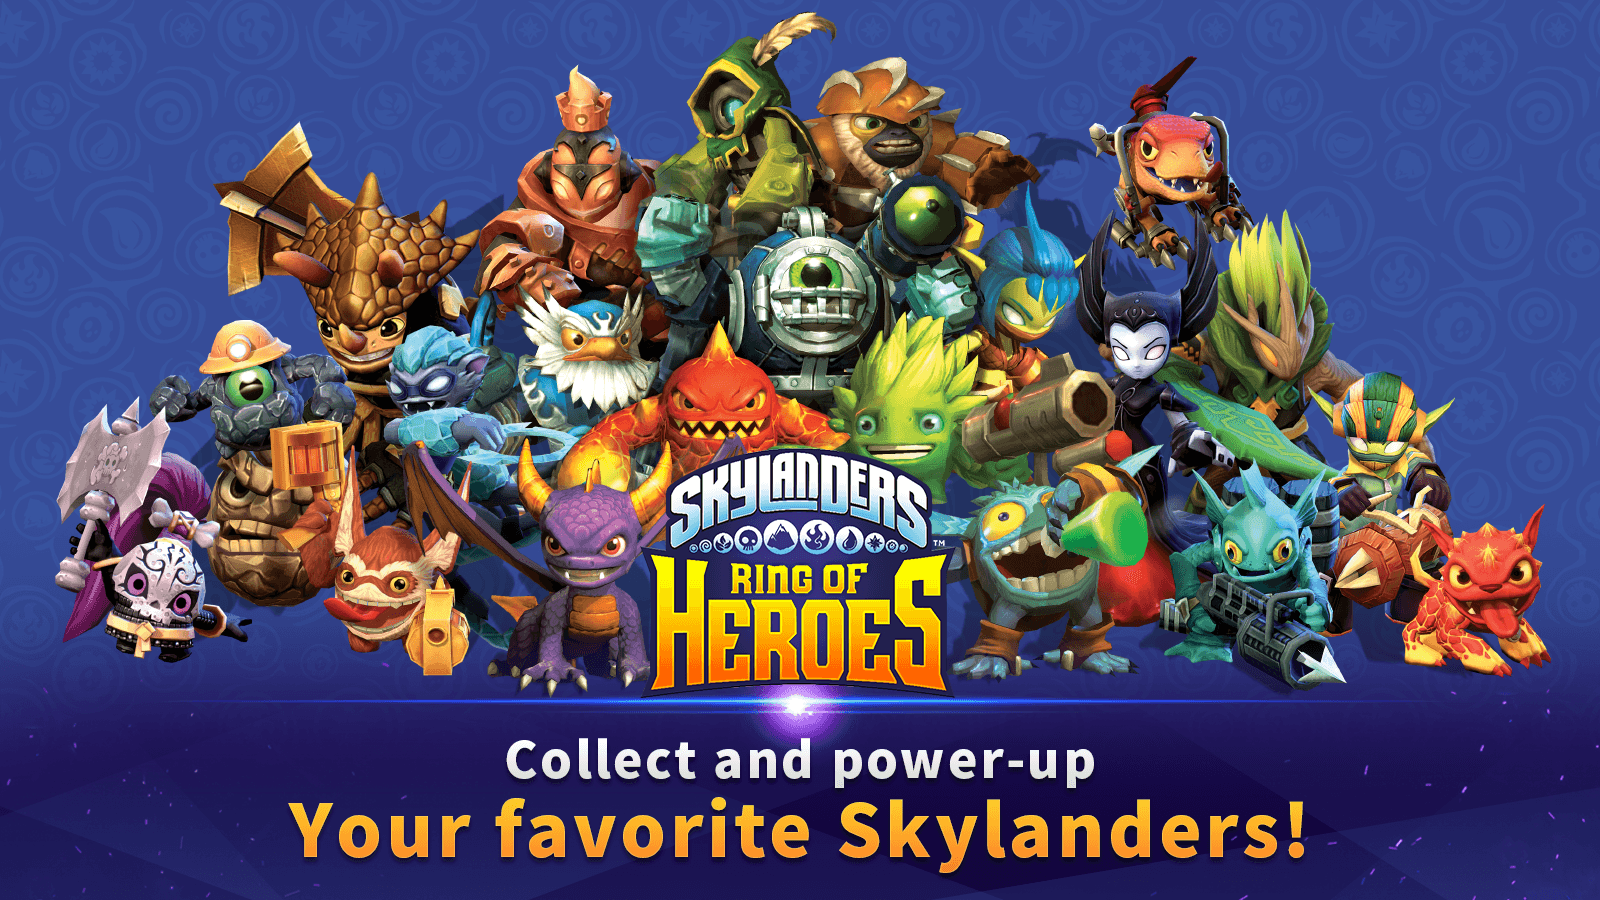 Download Skylanders™: Ring of Heroes on PC with BlueStacks